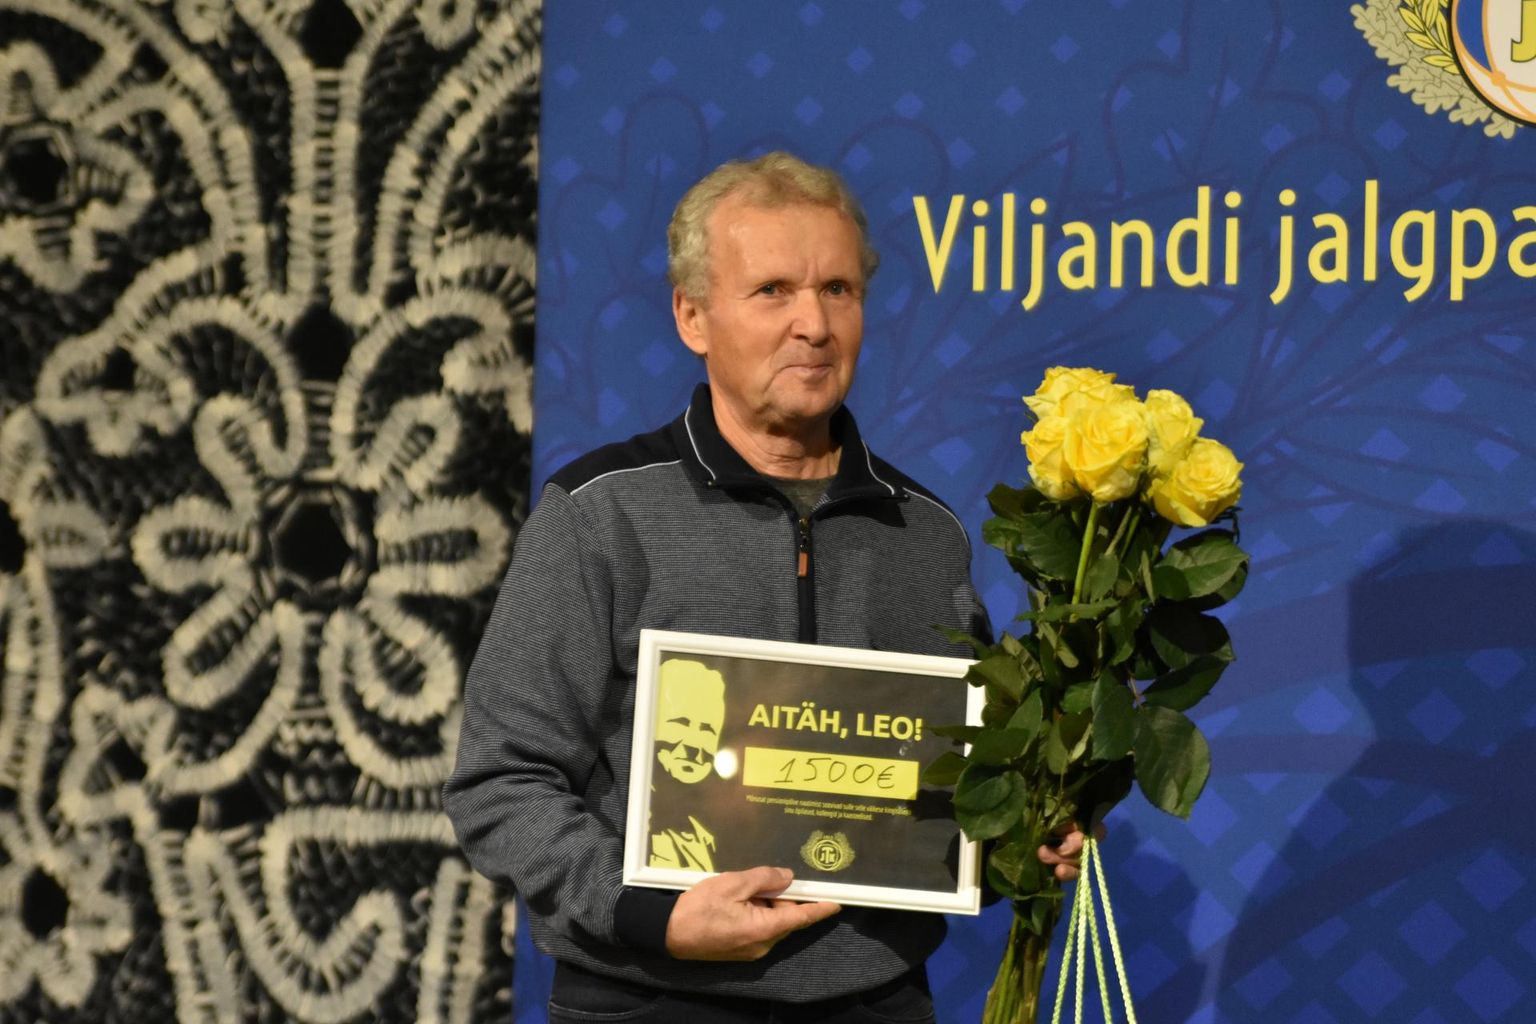 Eesti jalgpalli liidu hõbemärgi laureaat Leo Ira lõpetas tänavu 46 aasta pikkuse treenerikarjääri. Nüüd kandideerib ta aasta jalgpallitreeneri tiitlile.